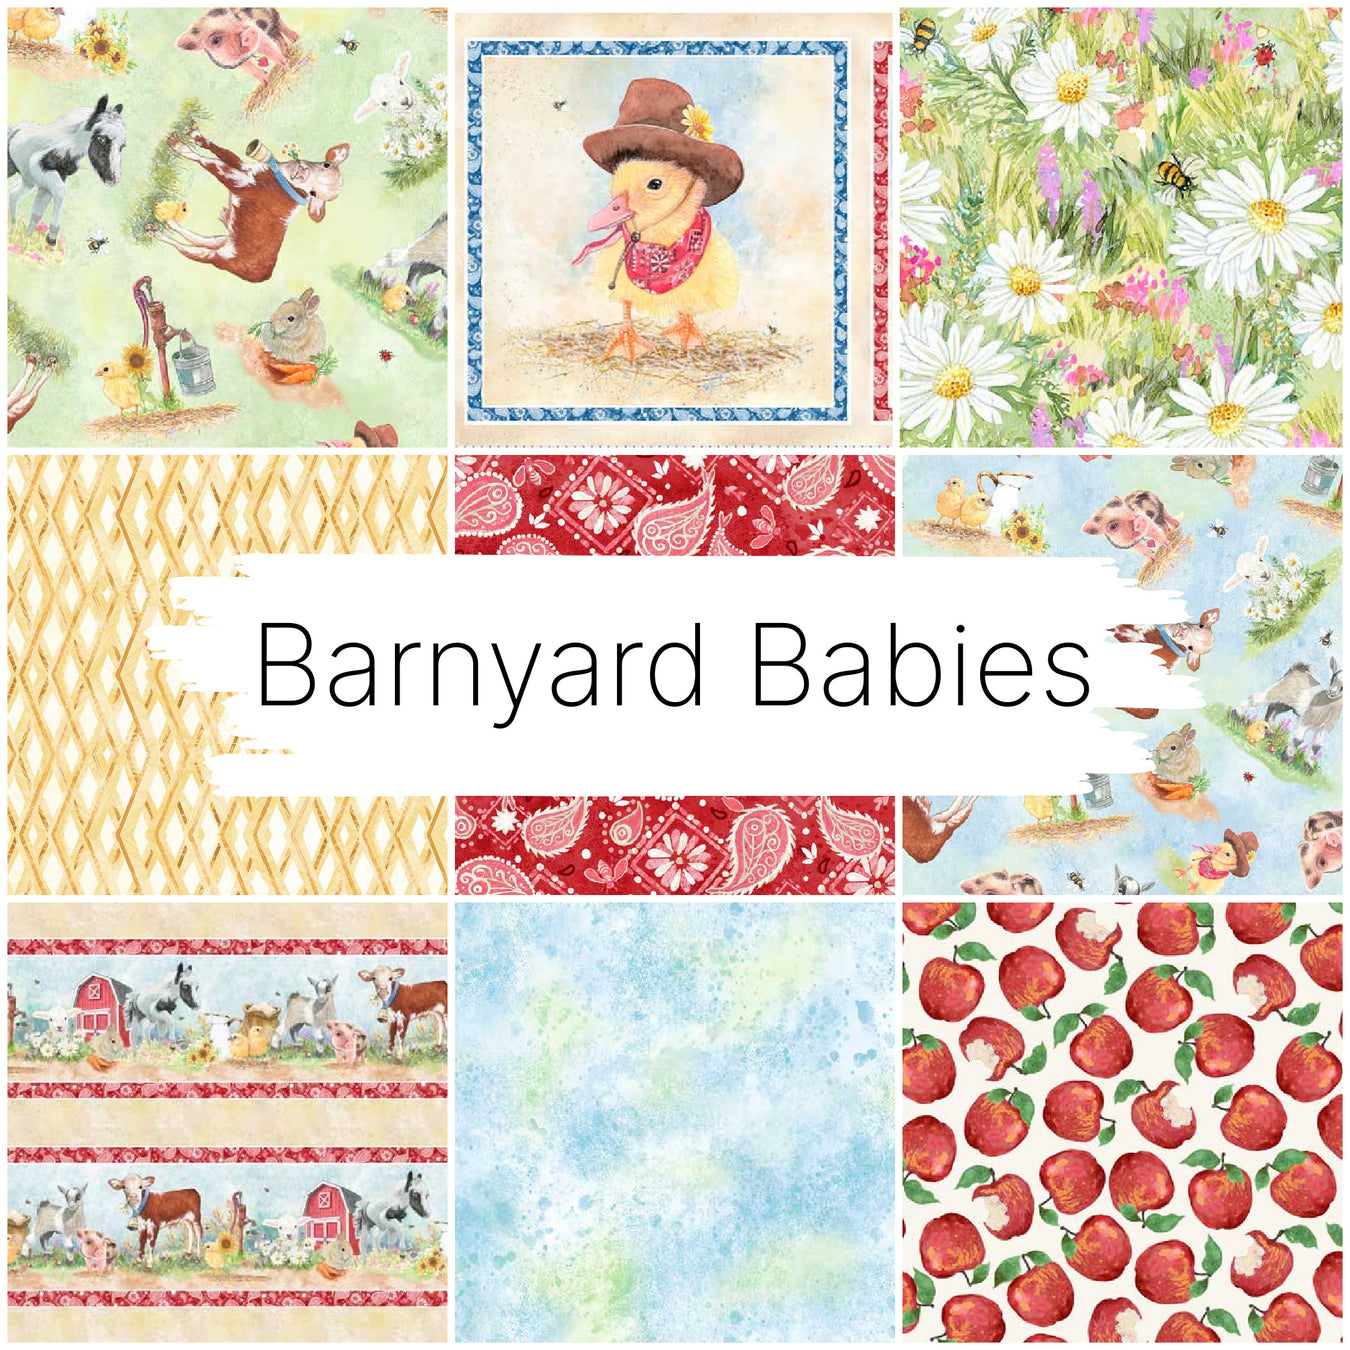 Barnyard Babies